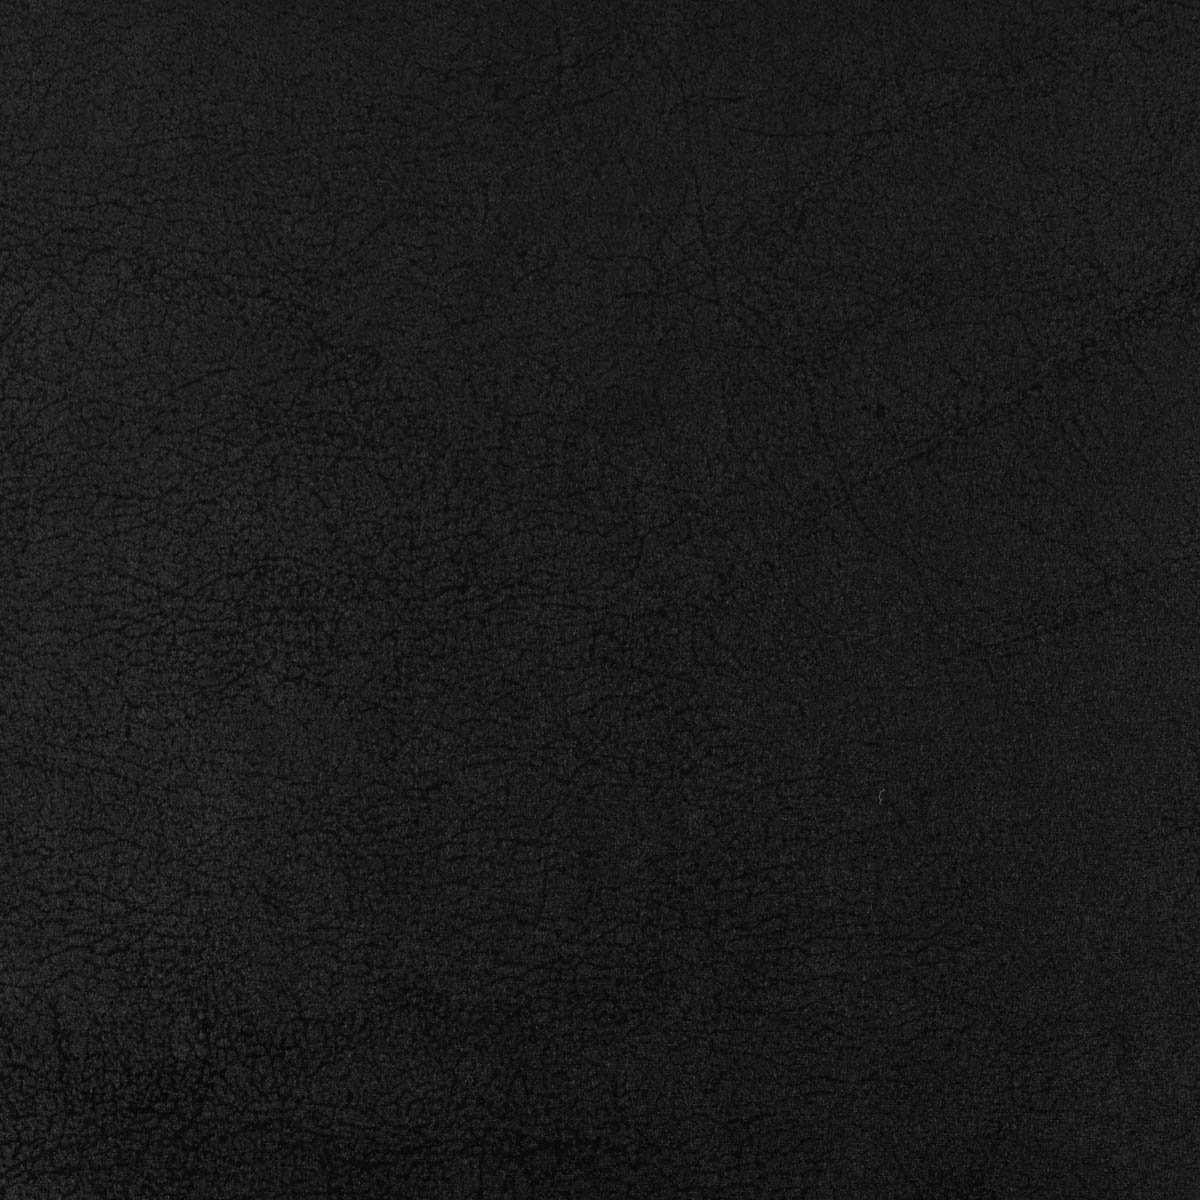 SCHÖNER LEBEN. Stoff Mikrofaser Polsterstoff Möbelstoff Valentina Lederlook schwarz 1,42m